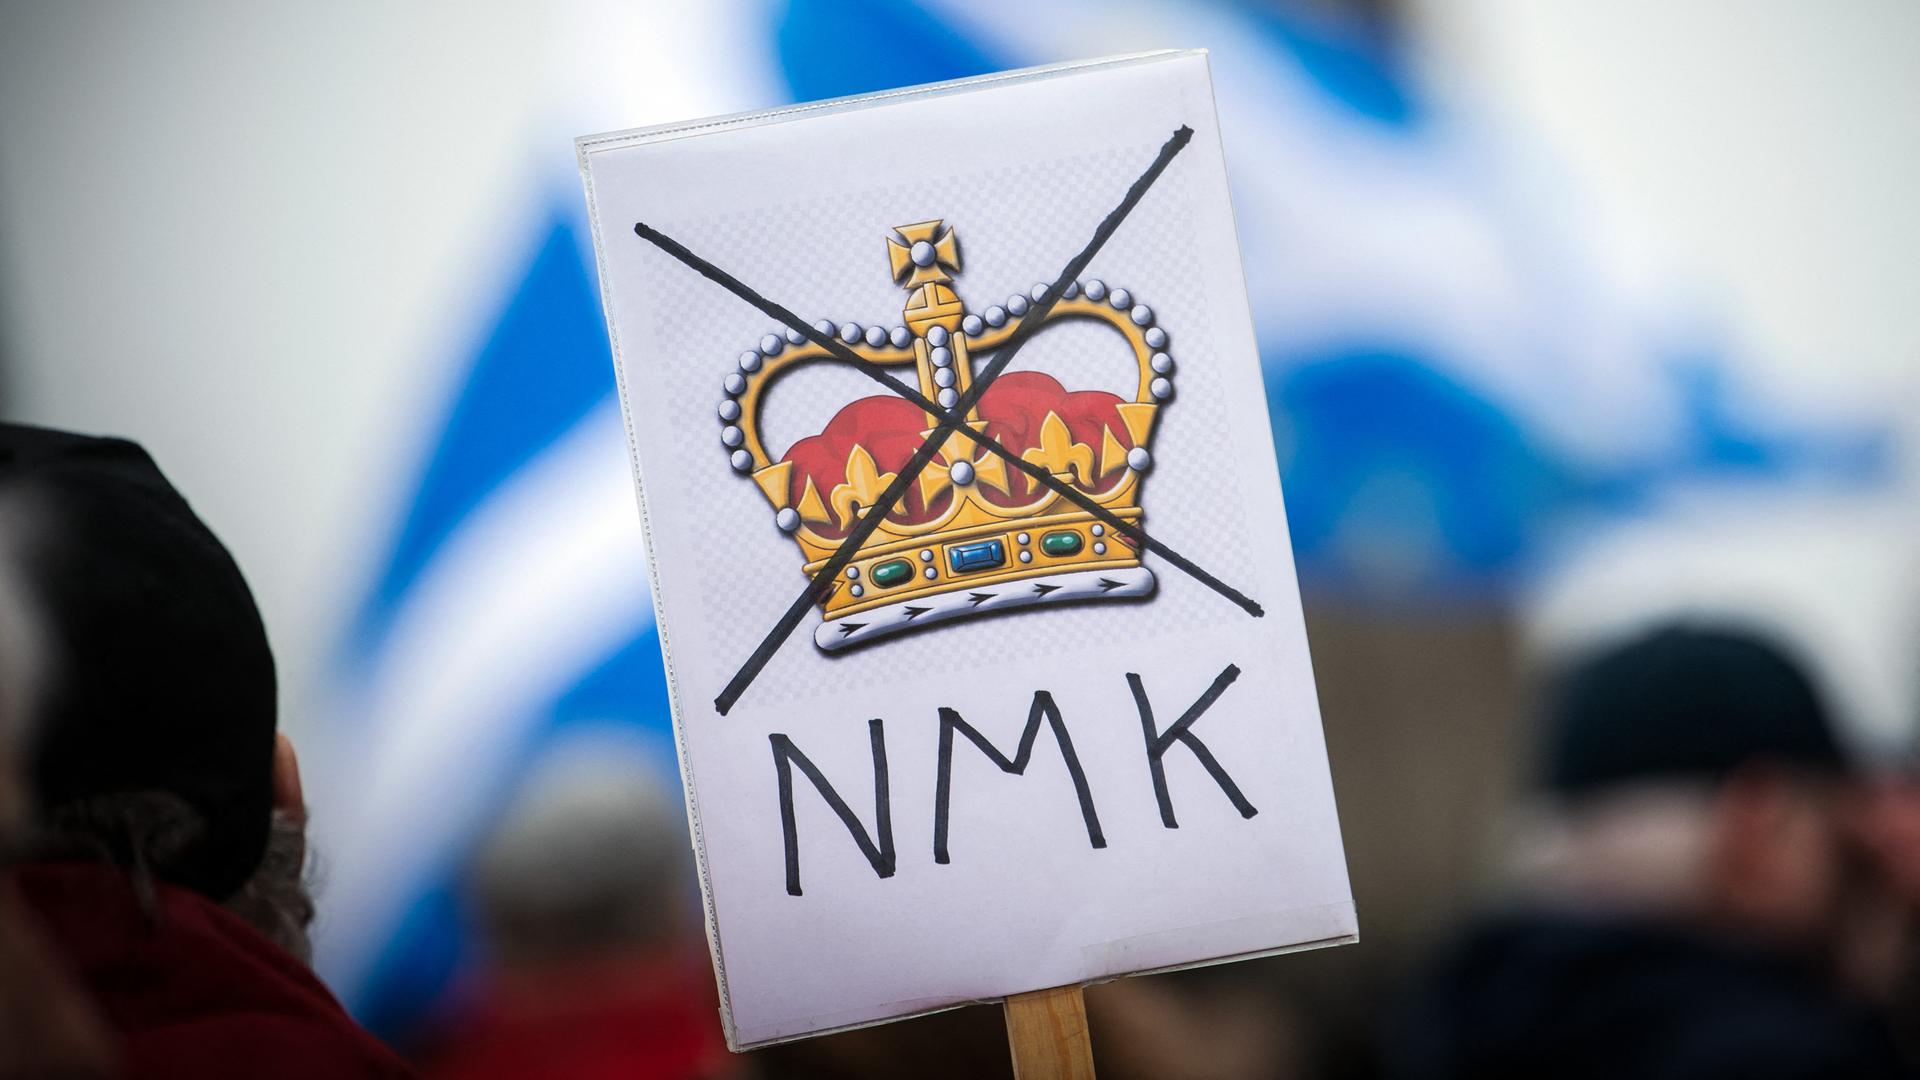 Auf einem Plakat ist die britische Krone durchgestrichen. Darunter stehen Großbuchstaben NMK.